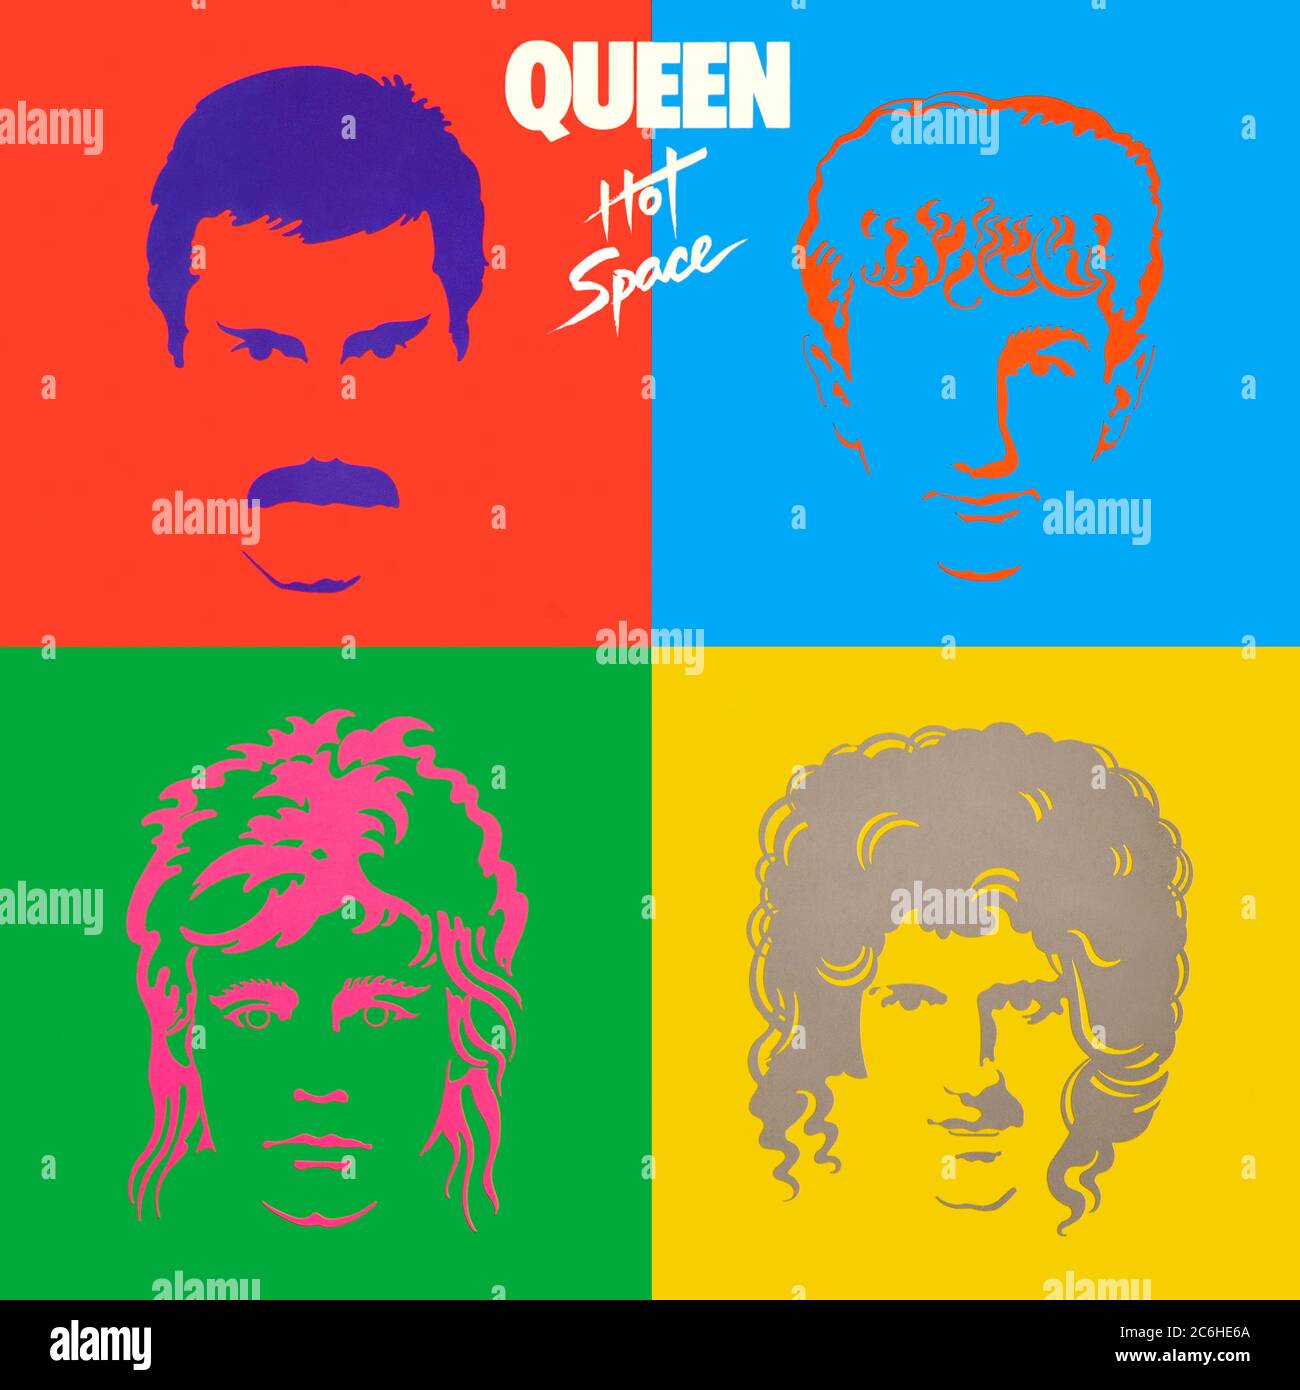 Queen - original Vinyl Album Cover - Hot Space - 1982 Stockfoto